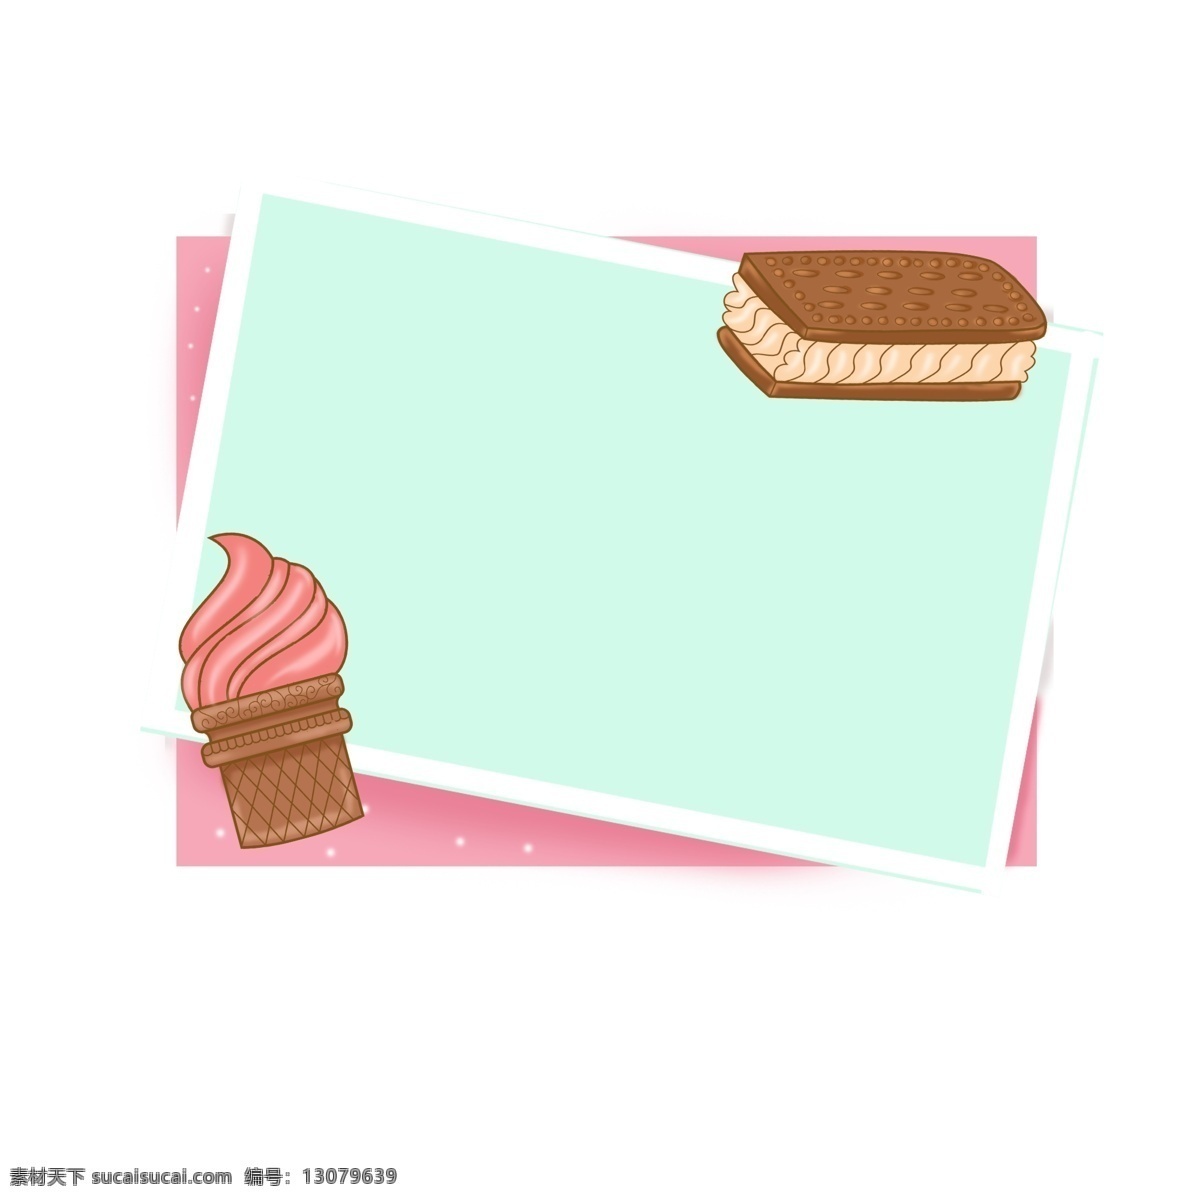 手绘 可爱 冰激凌 边框 冰淇淋 青色 蛋糕 食物 甜品